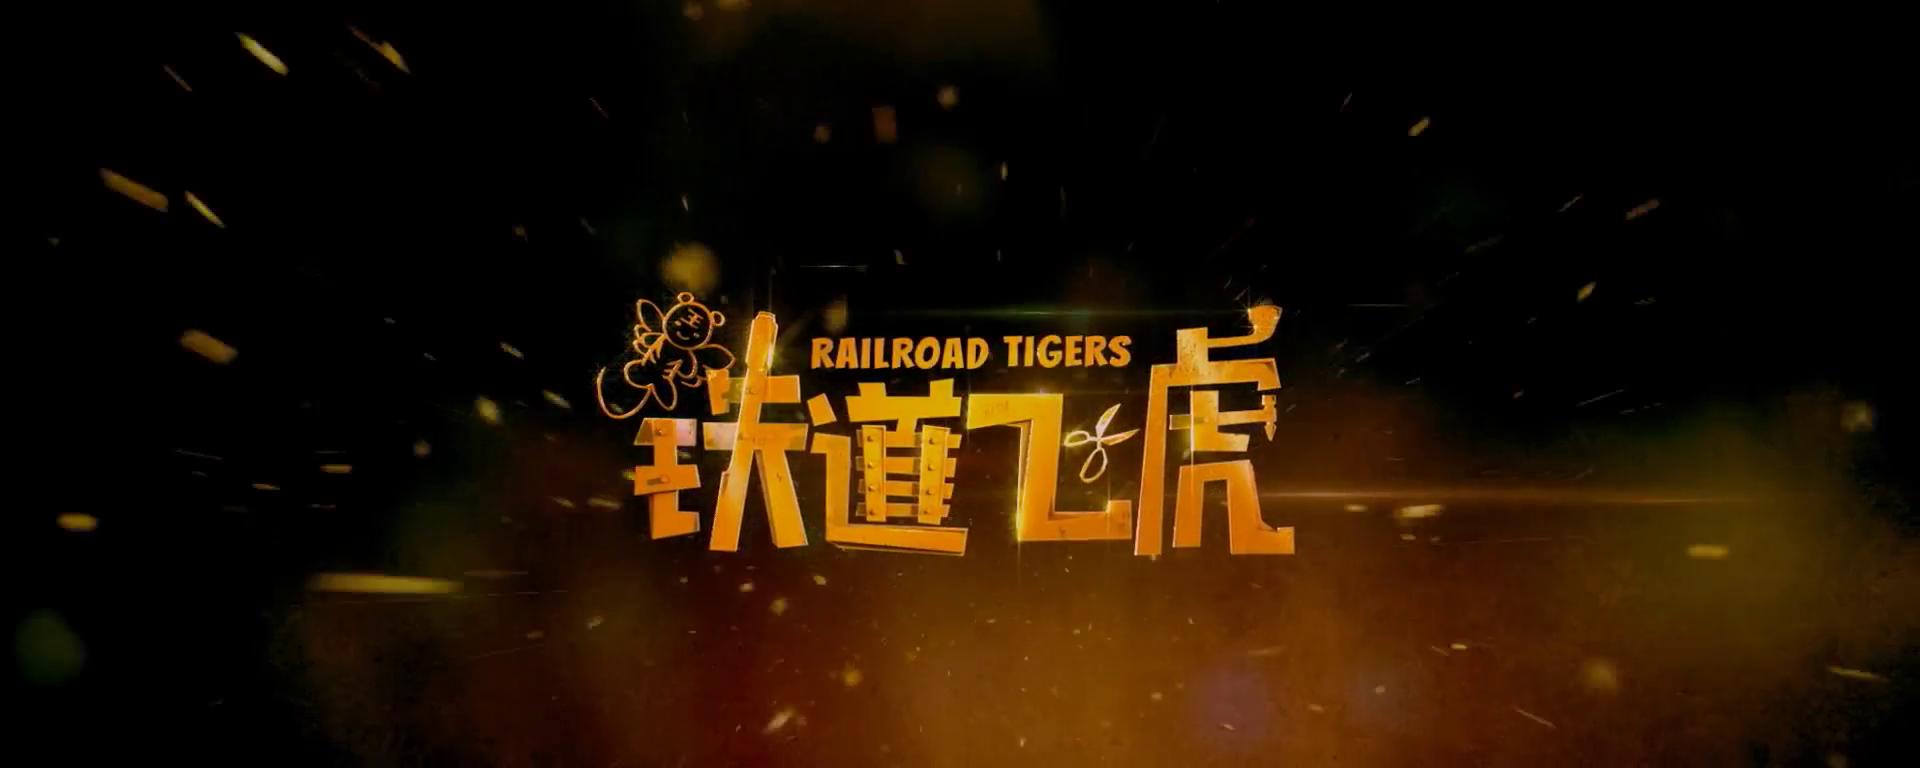 Фото - Железнодорожные тигры: 1920x768 / 59 Кб